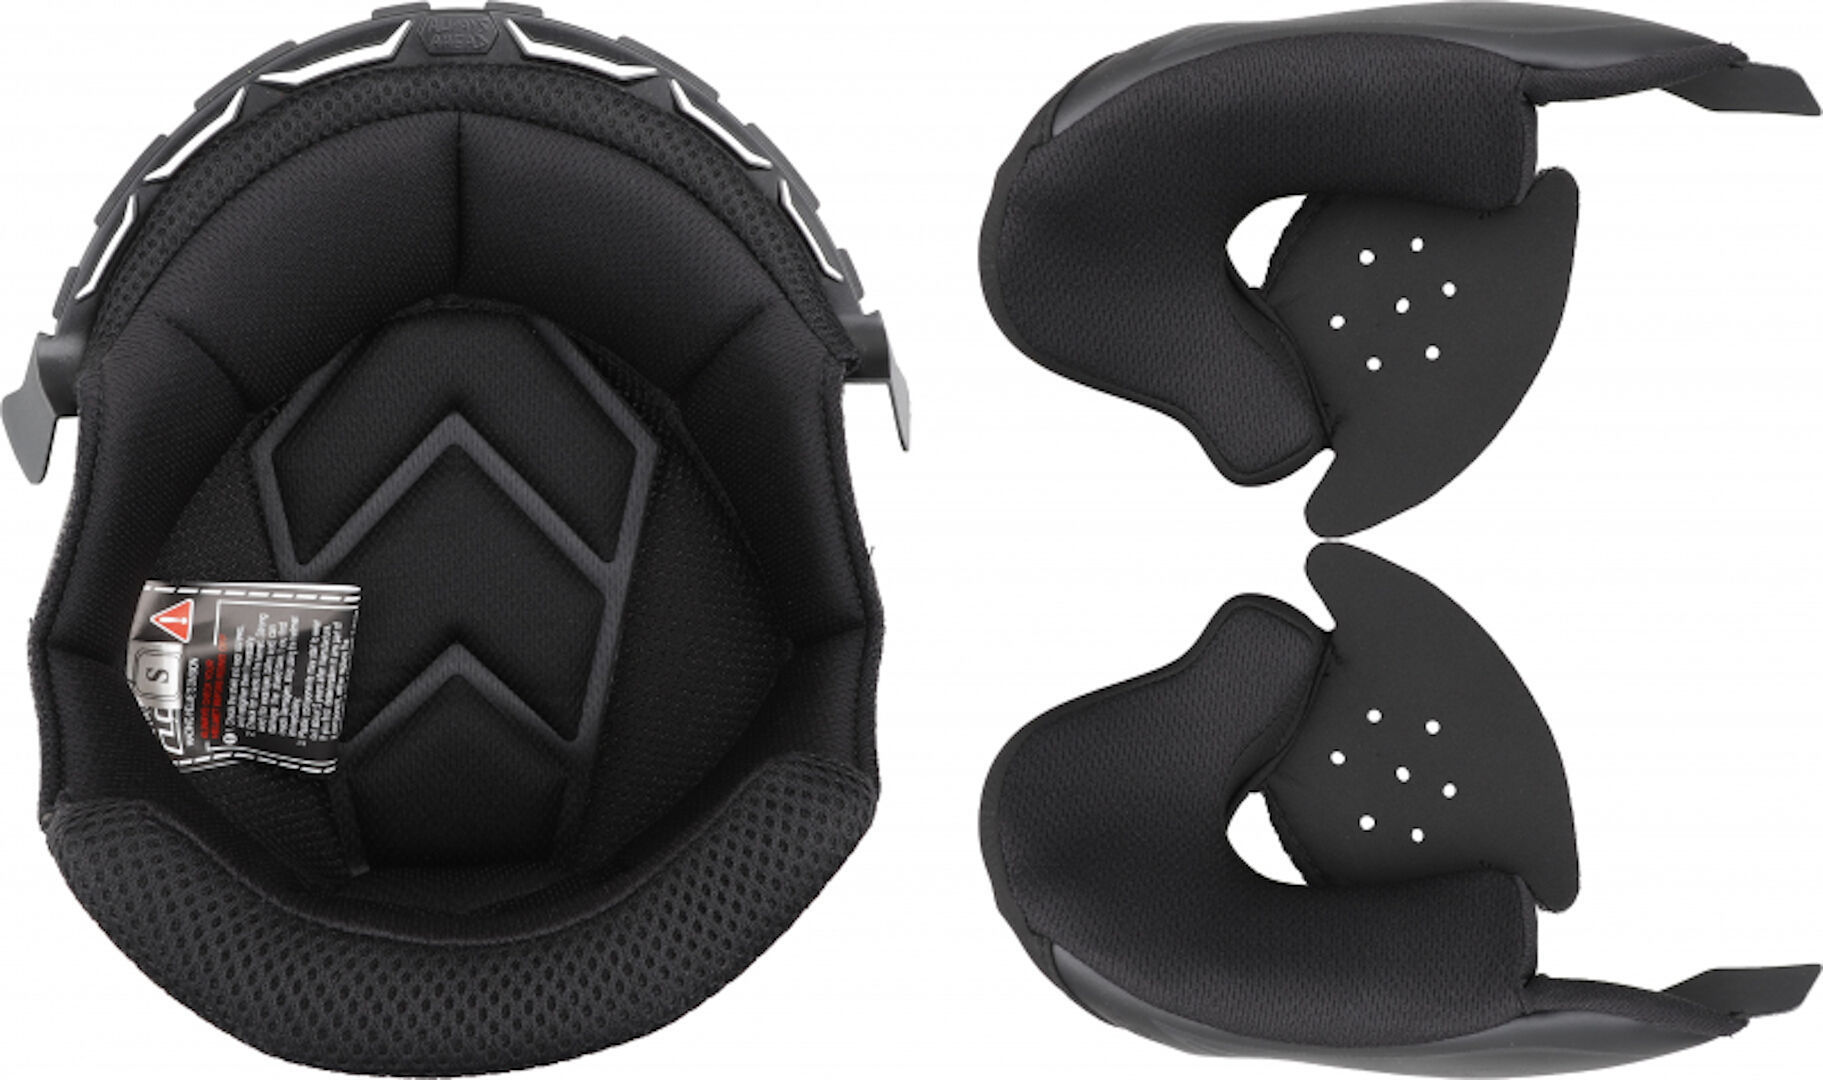 Подкладка LS2 OF600 Copter внутренняя для шлема внутренняя подкладка для шлема защитная губка буферная набивка для мотоцикла велосипеда безопасный для езды удобный коврик для шлема